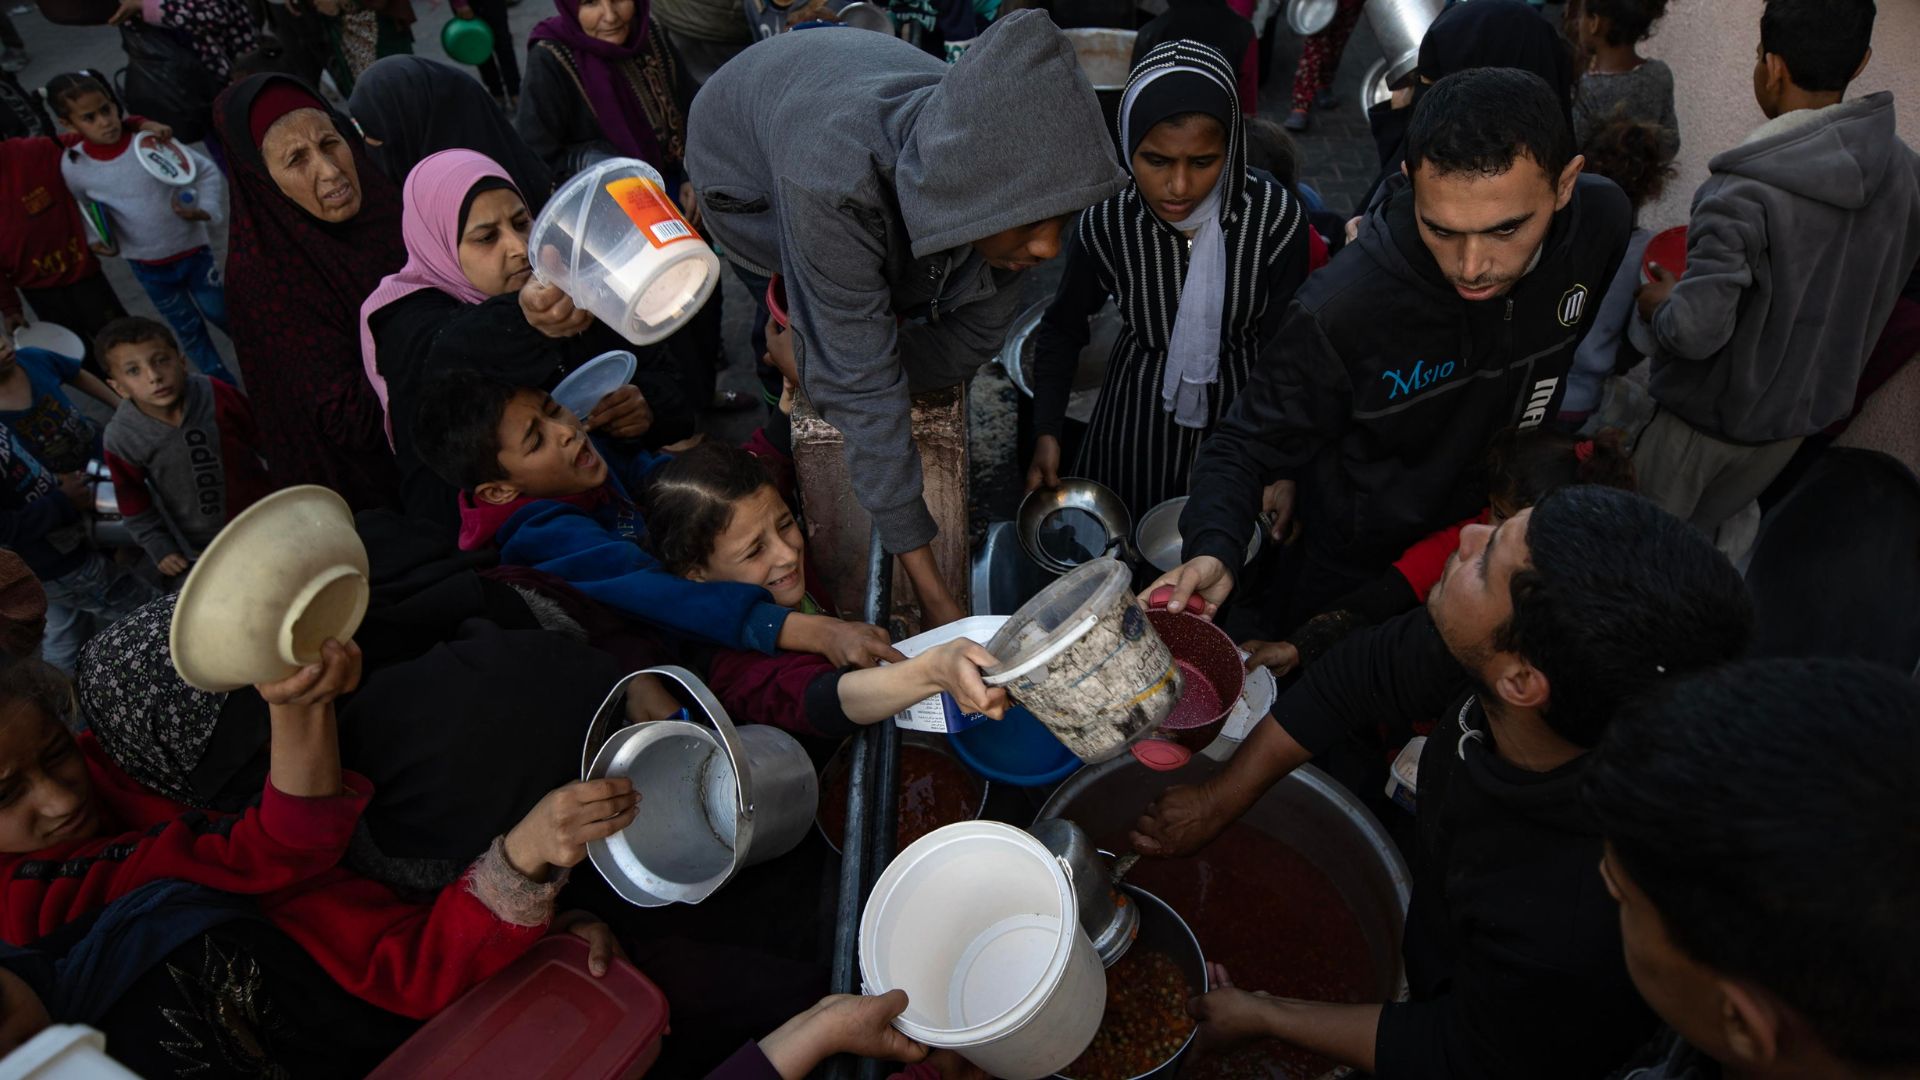 L'inferno umanitario a Gaza, la sanità pubblica al collasso e le altre notizie della giornata